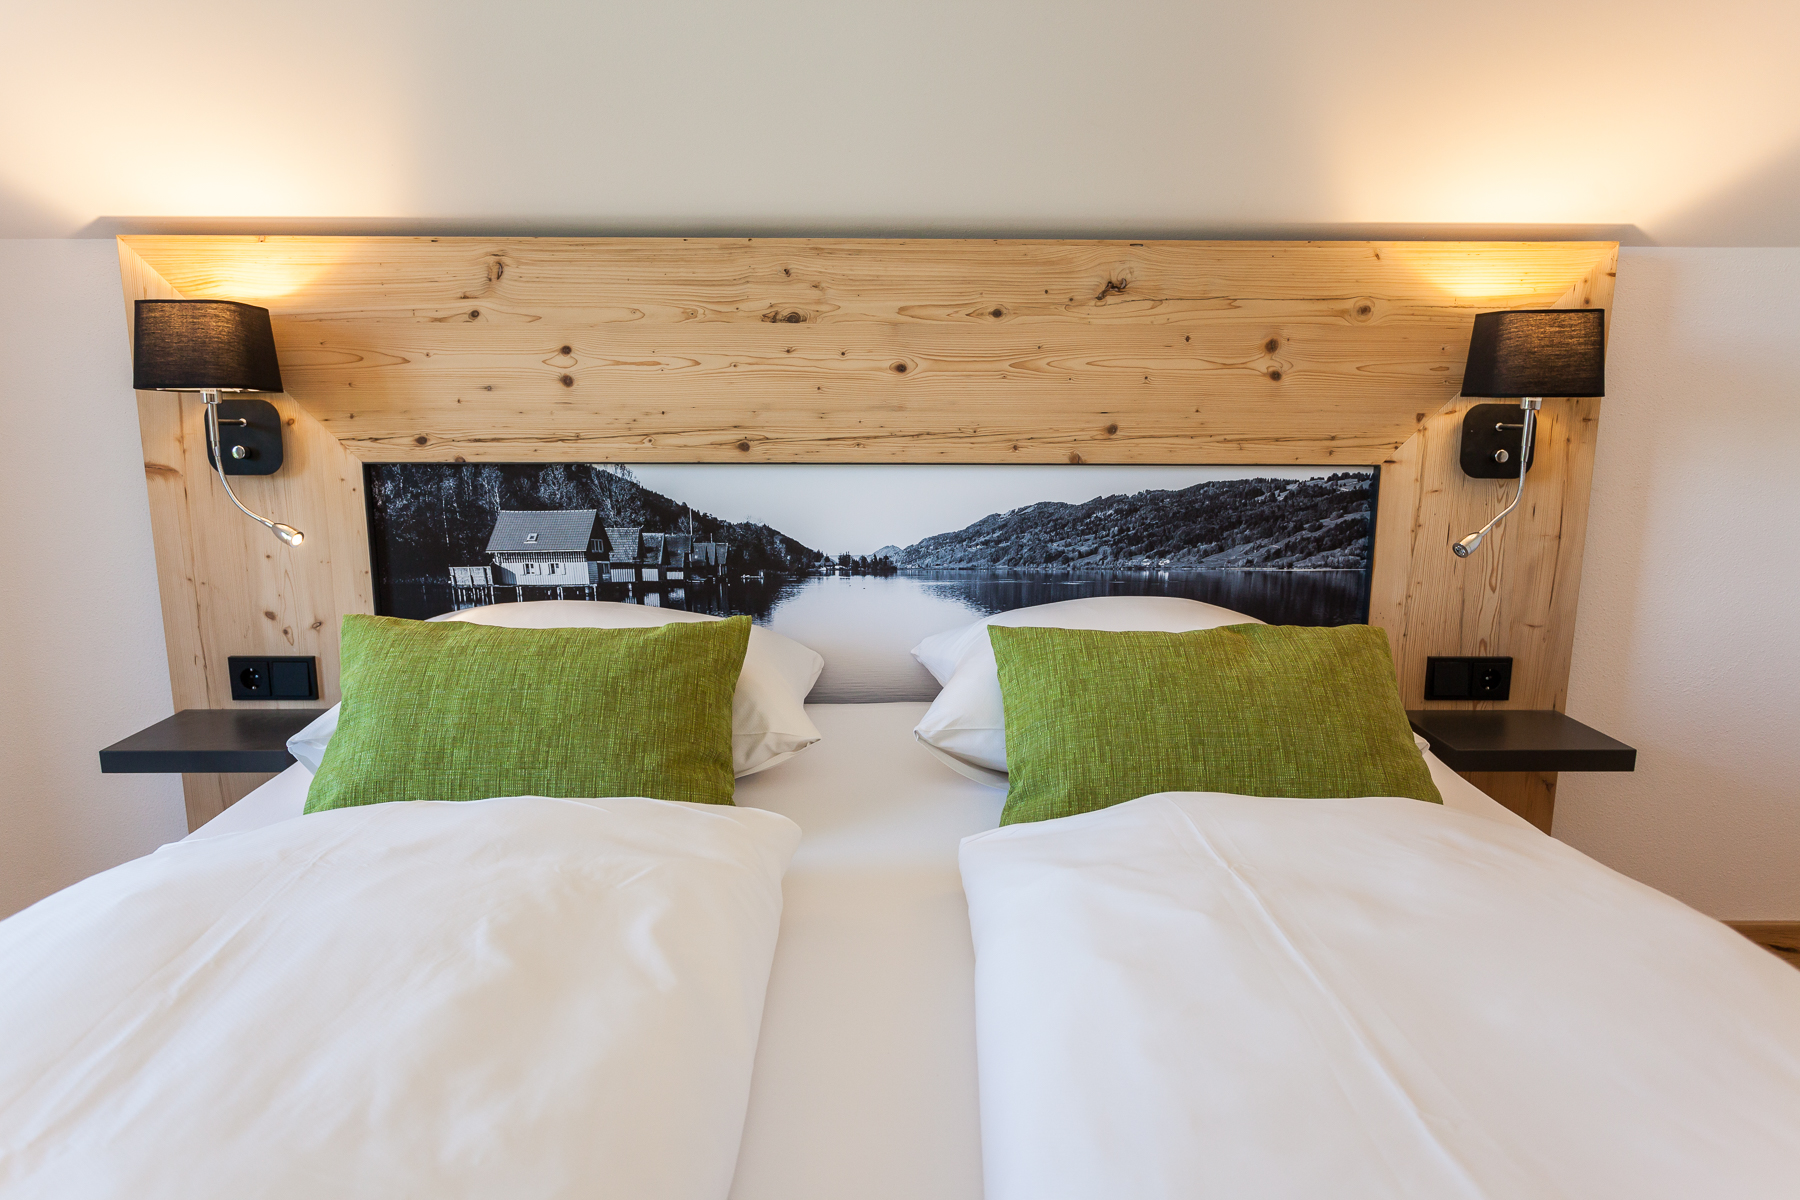 Slaapkamer van romantisch chalet de Hierlhof in Beieren